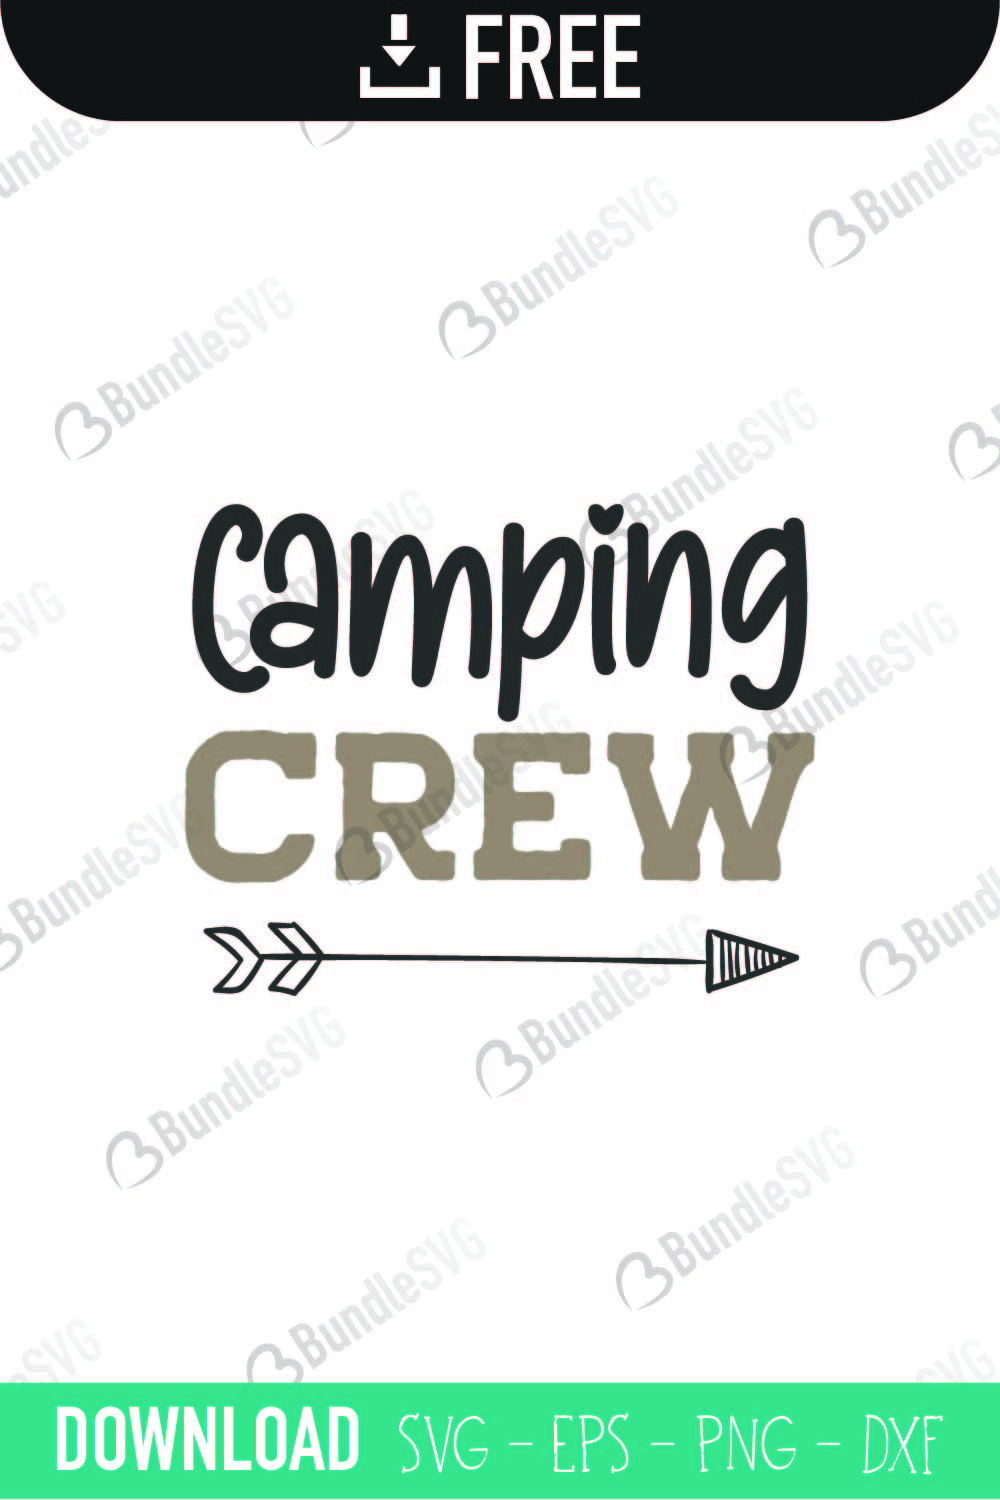 Download Camping Crew SVG Cut Files Free Download | BundleSVG